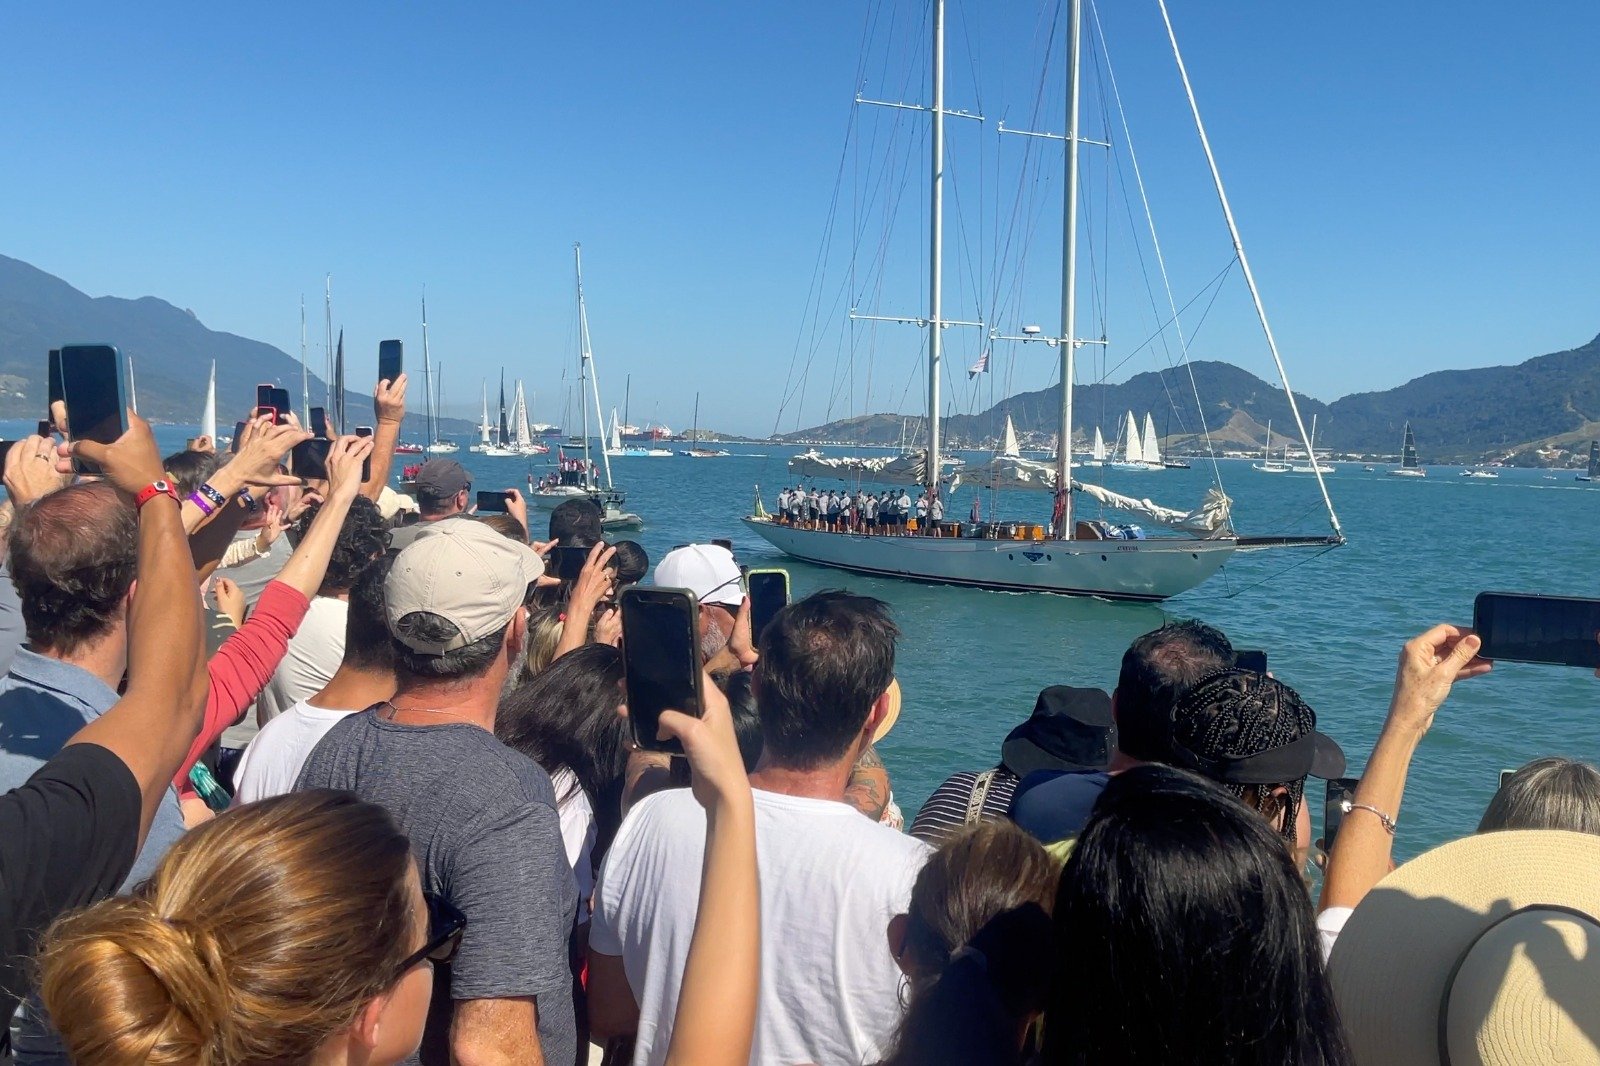 Desfile dos Barcos atrai multidão antes da largada da Semana de Vela de Ilhabela